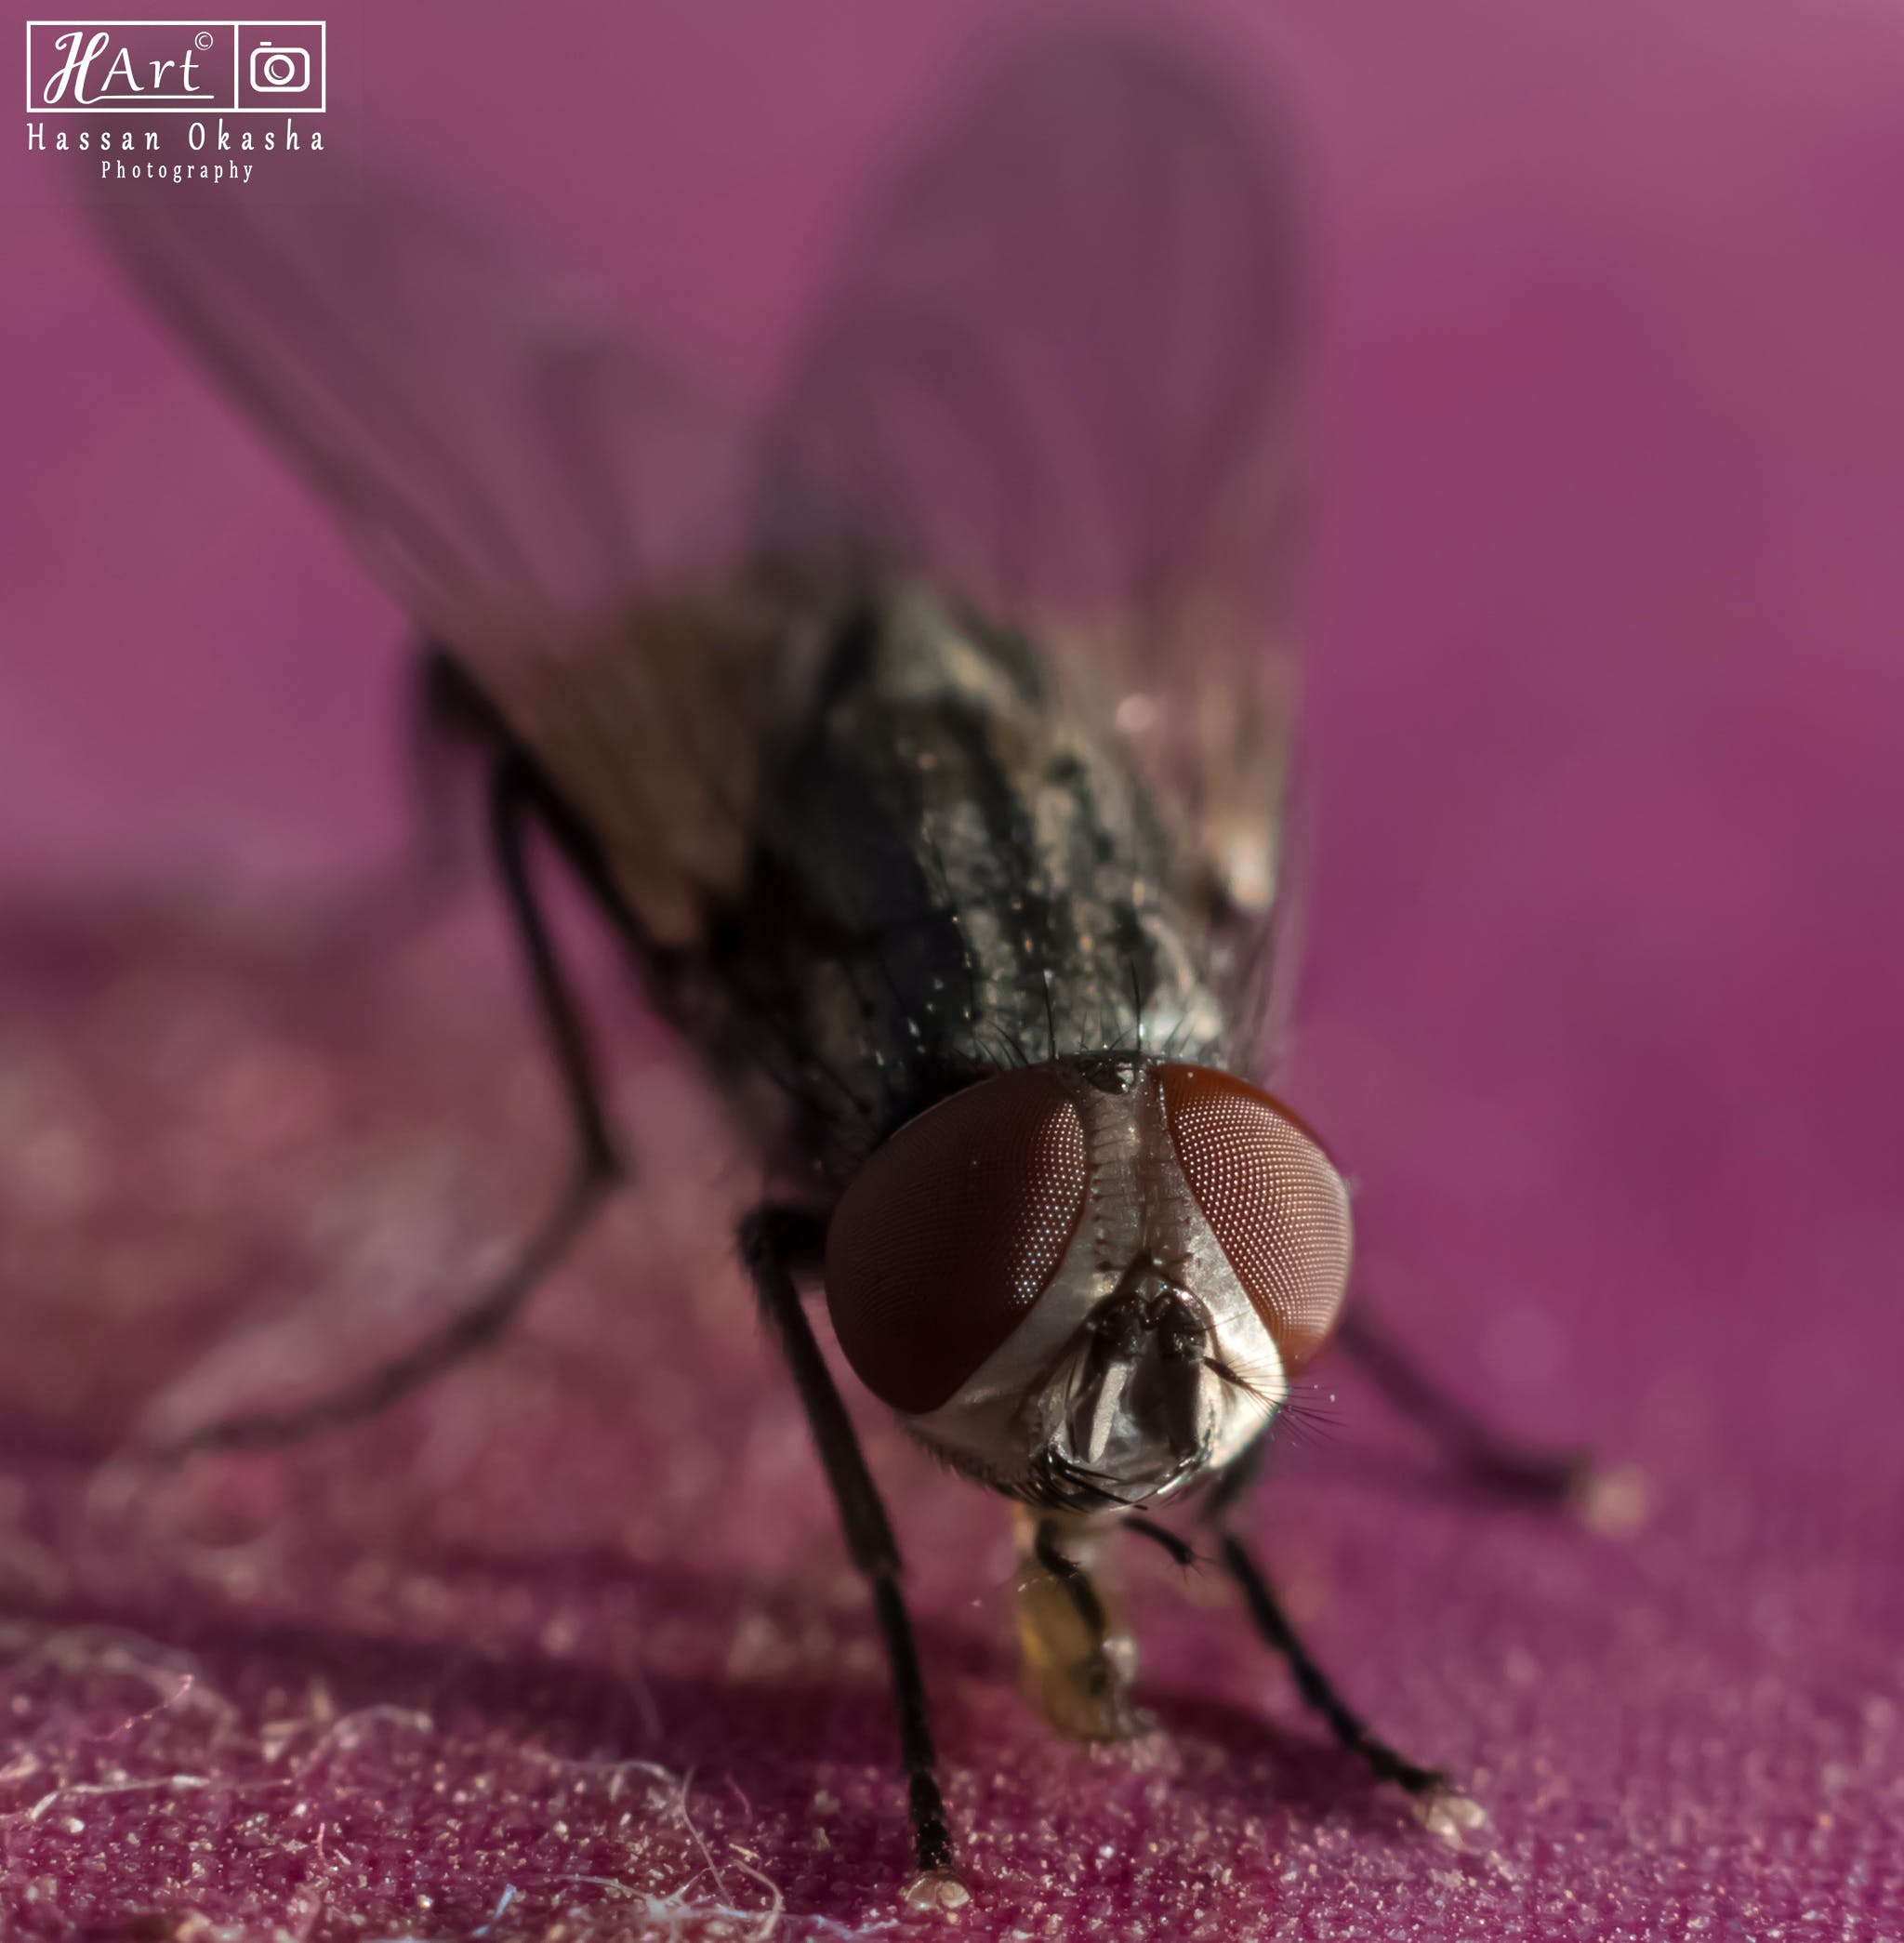 С какой скоростью летают мухи? какова скорость полета комнатной мухи? топ 3 самых быстрых насекомых в мире